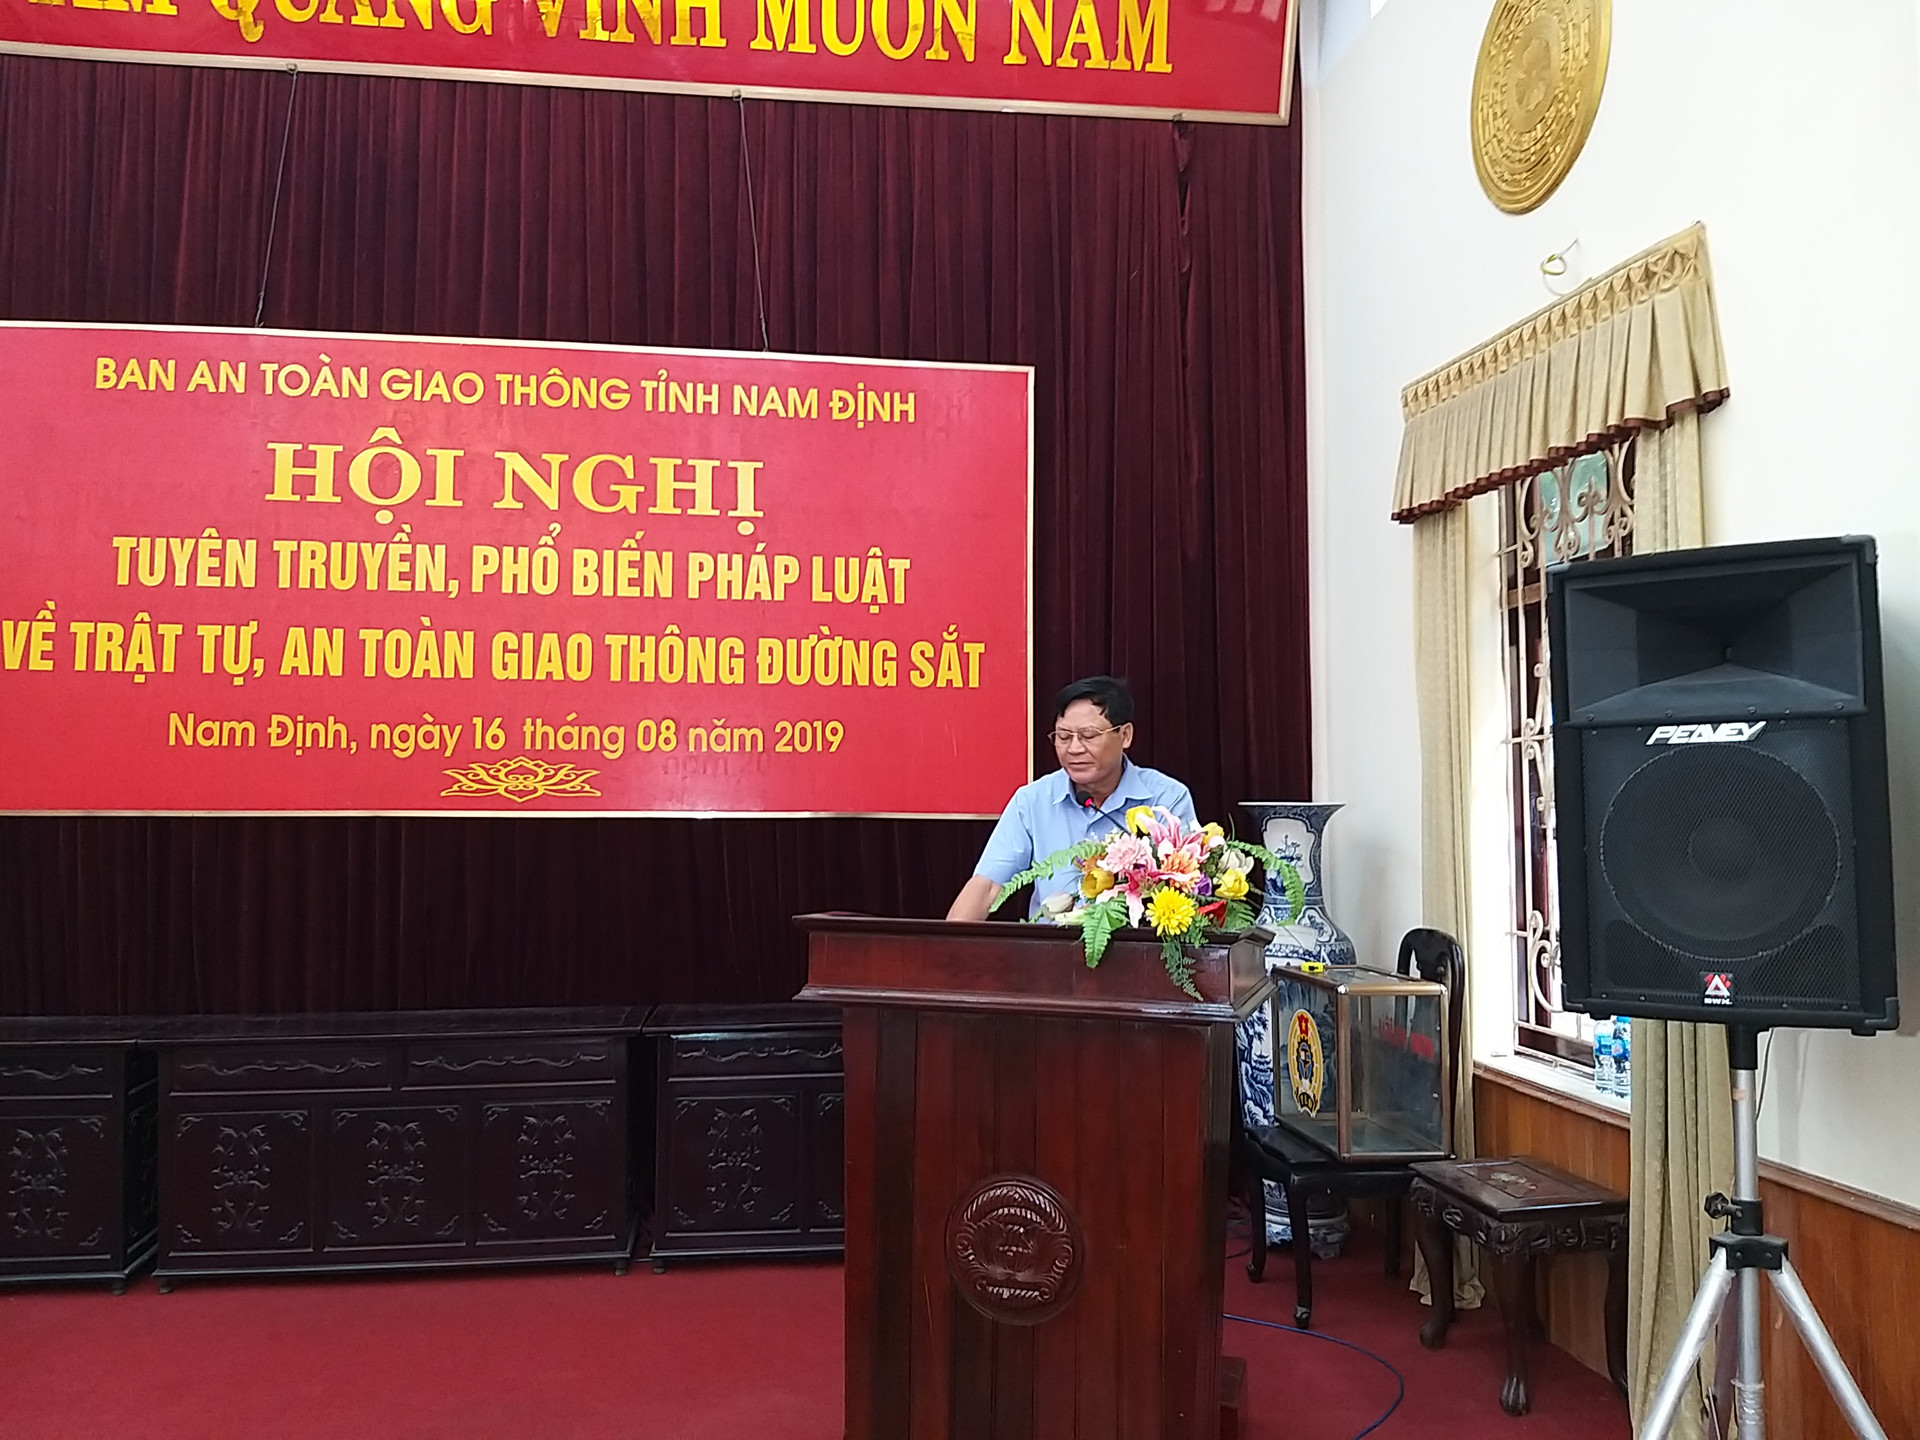 Nam Định: Hội nghị phổ biến pháp luật về trật tự an toàn giao thông đường sắt